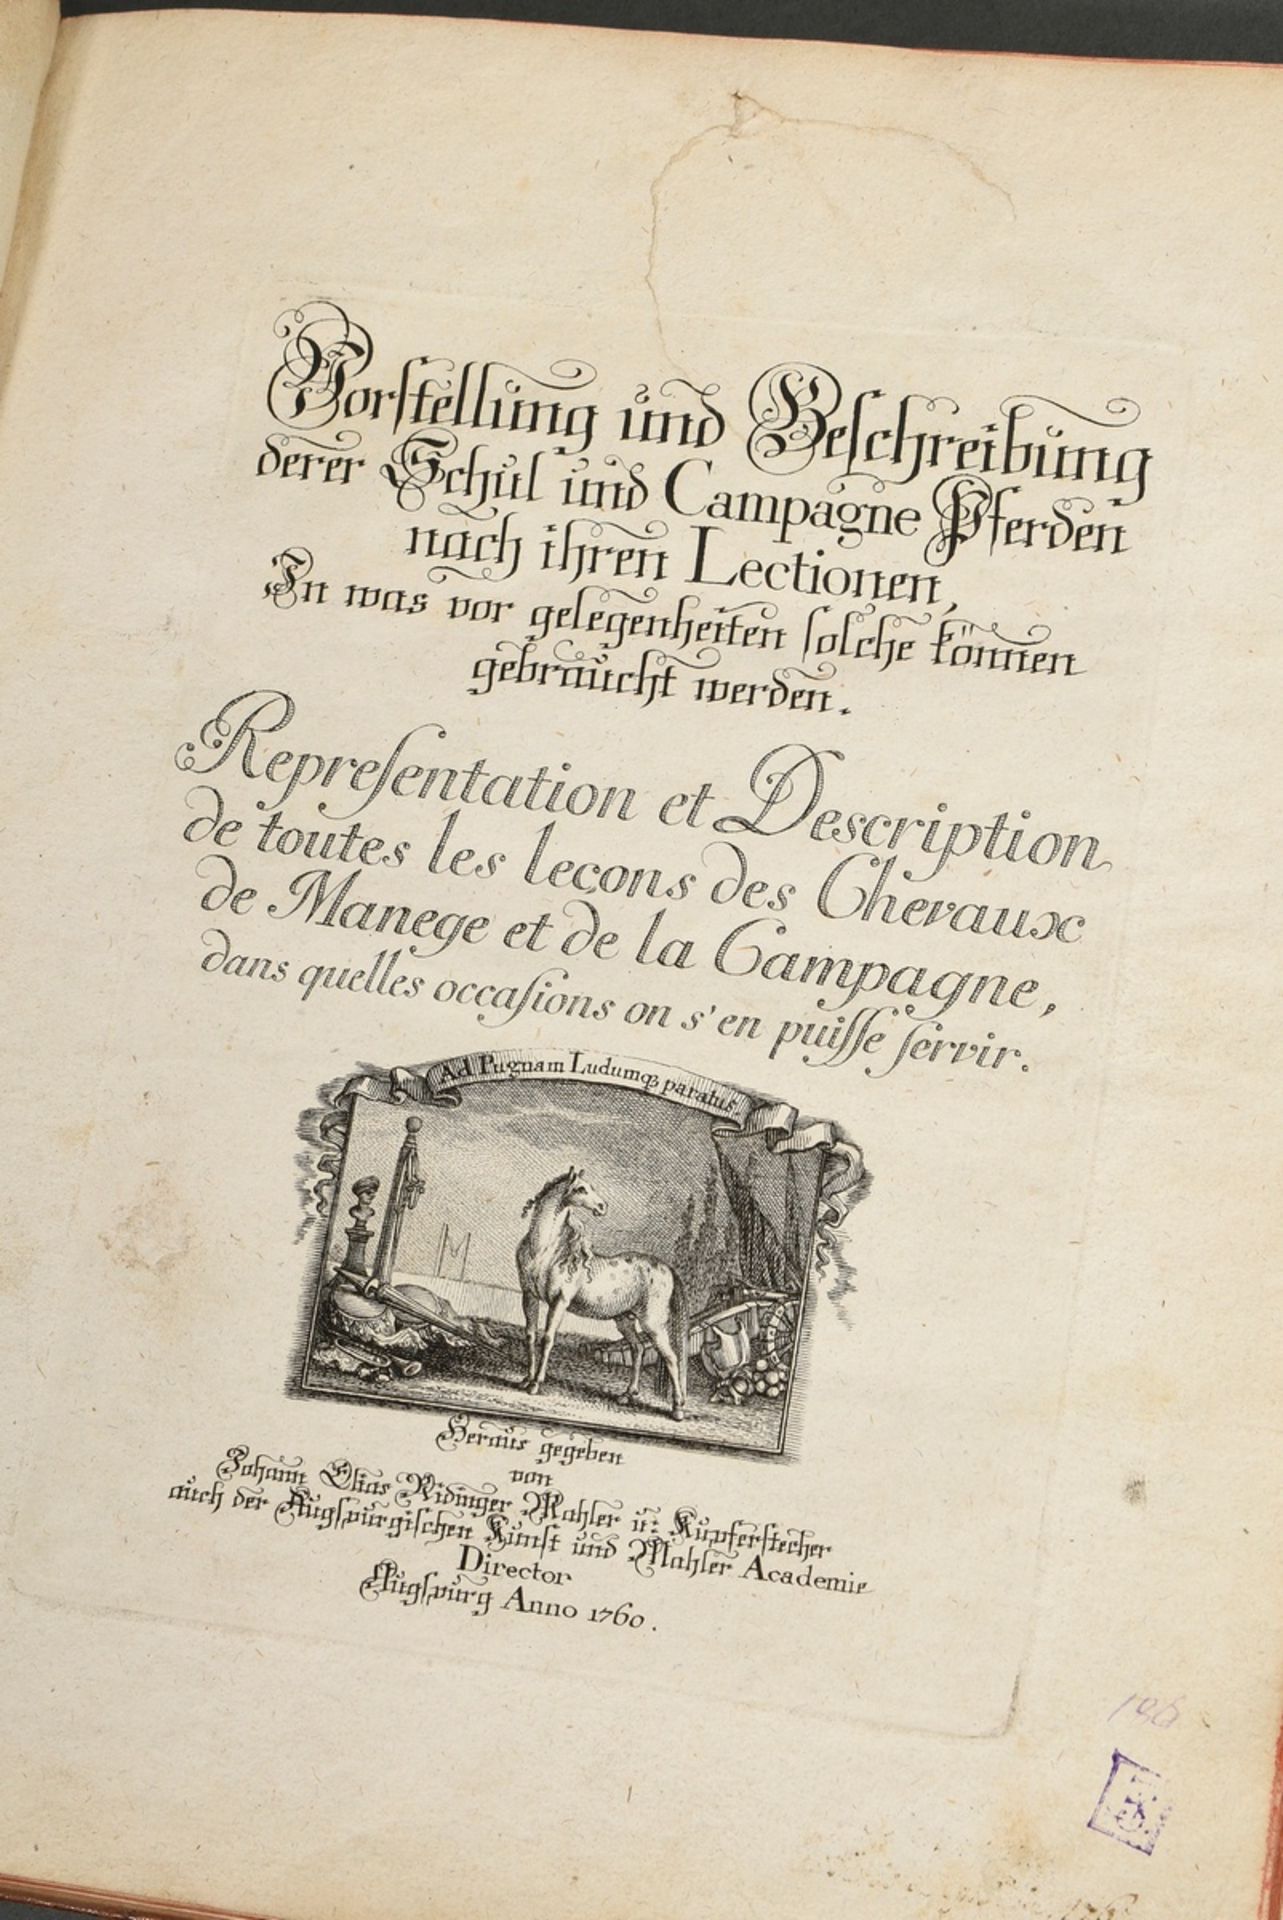 Volume "Vorstellung und Beschreibung derer Schul und Campagne Pferden nach ihren Lectionen..." 1760 - Image 4 of 7